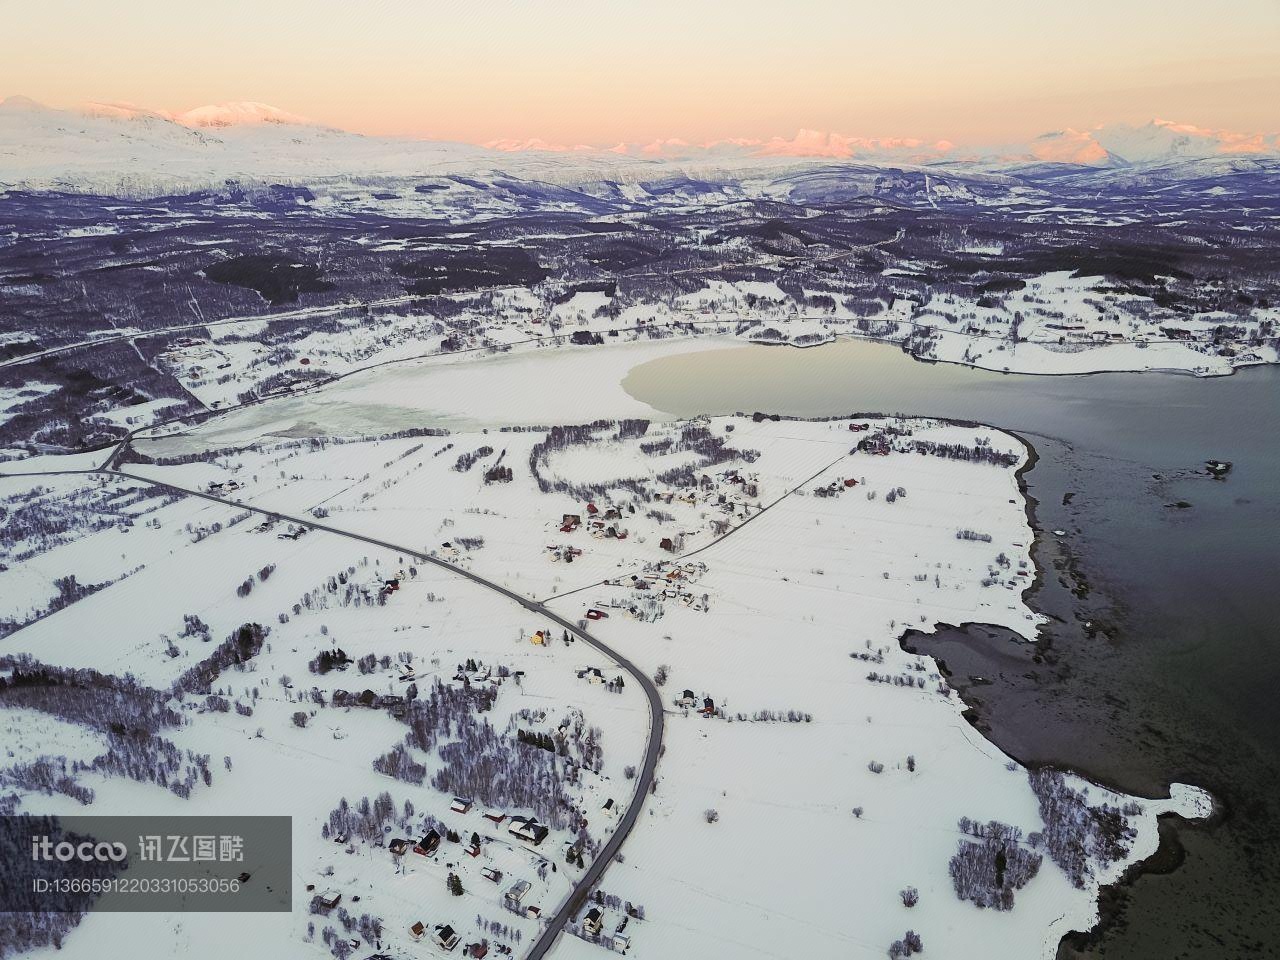 雪山,挪威,国际旅游